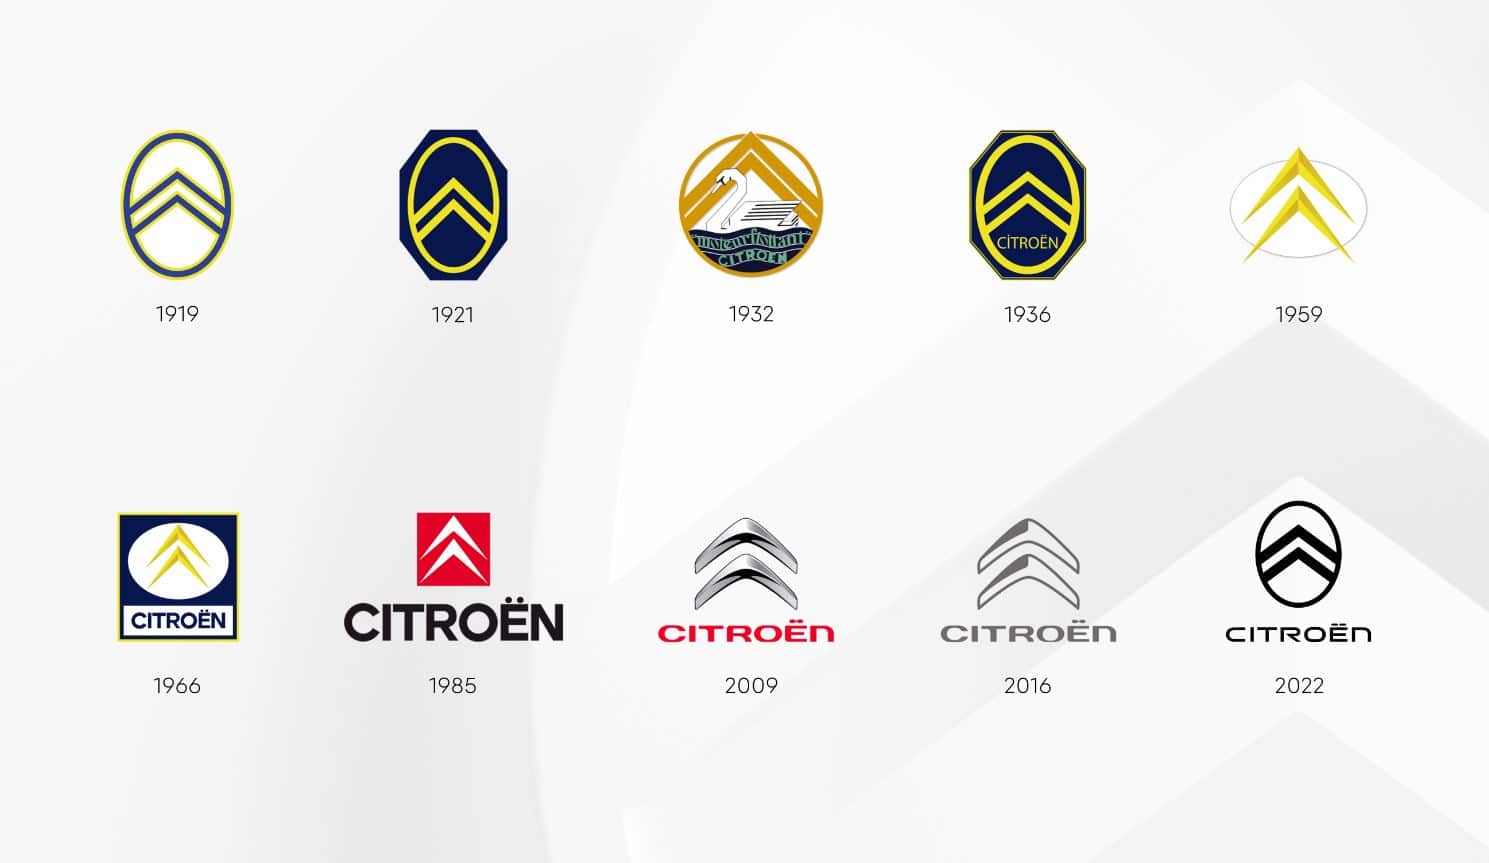 logo de Citroën